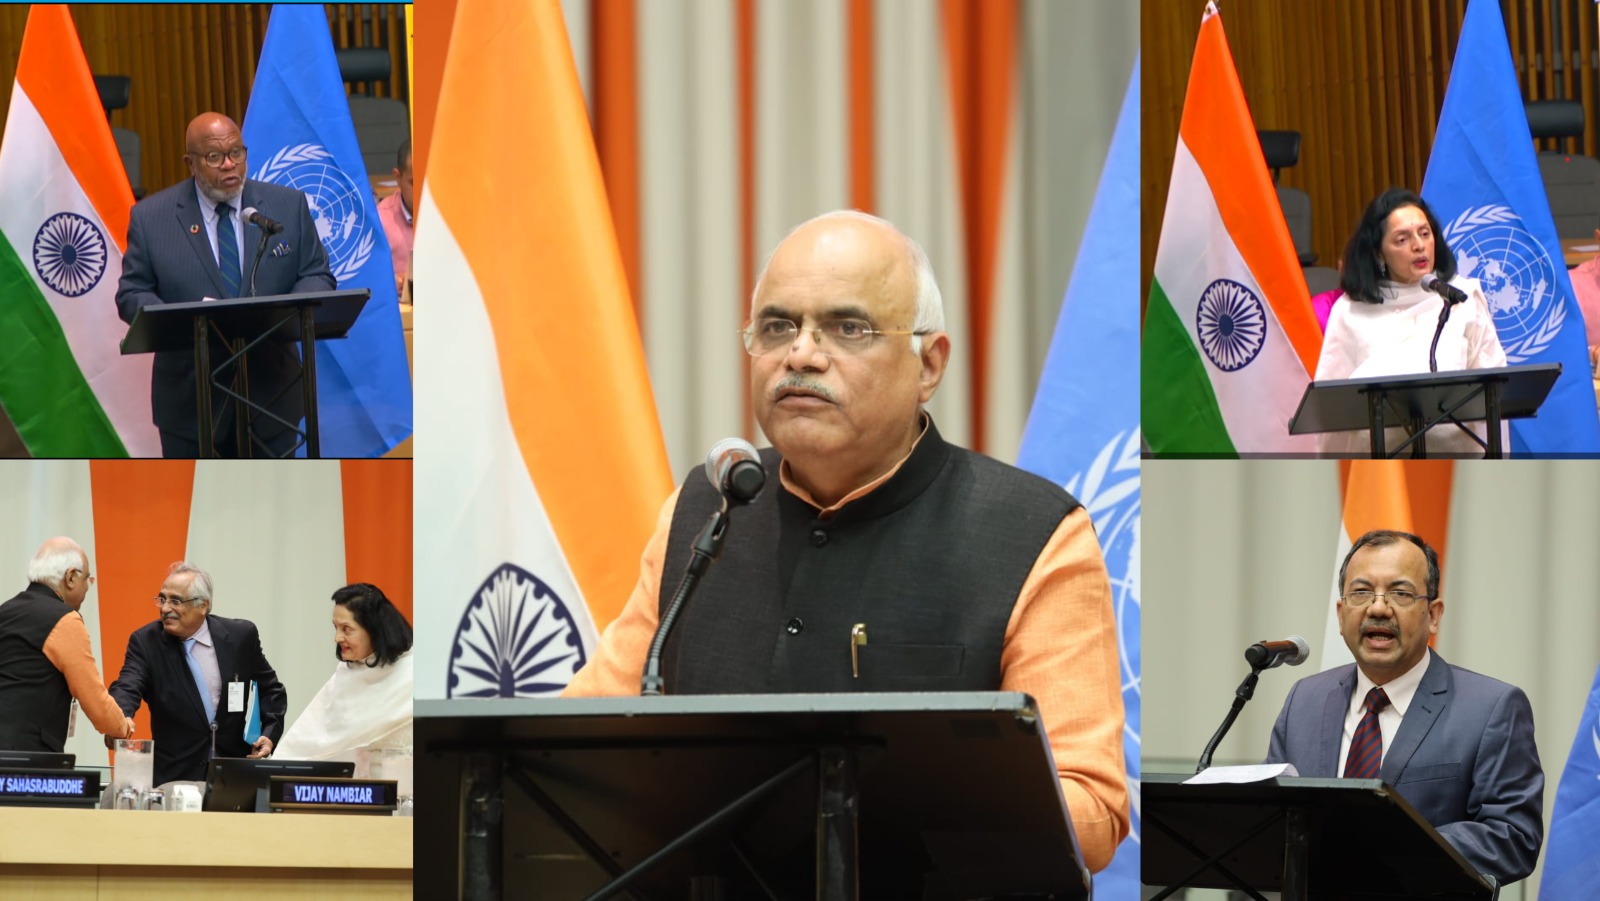 10 अक्टूबर 2023 को, ICCR और संयुक्त राष्ट्र (UN) में भारत के स्थायी मिशन ने संयुक्त राष्ट्र मुख्यालय, NY, US में 'वसुधैव कुटुंबकम' पर एक अंतर्राष्ट्रीय सम्मेलन का आयोजन किया।